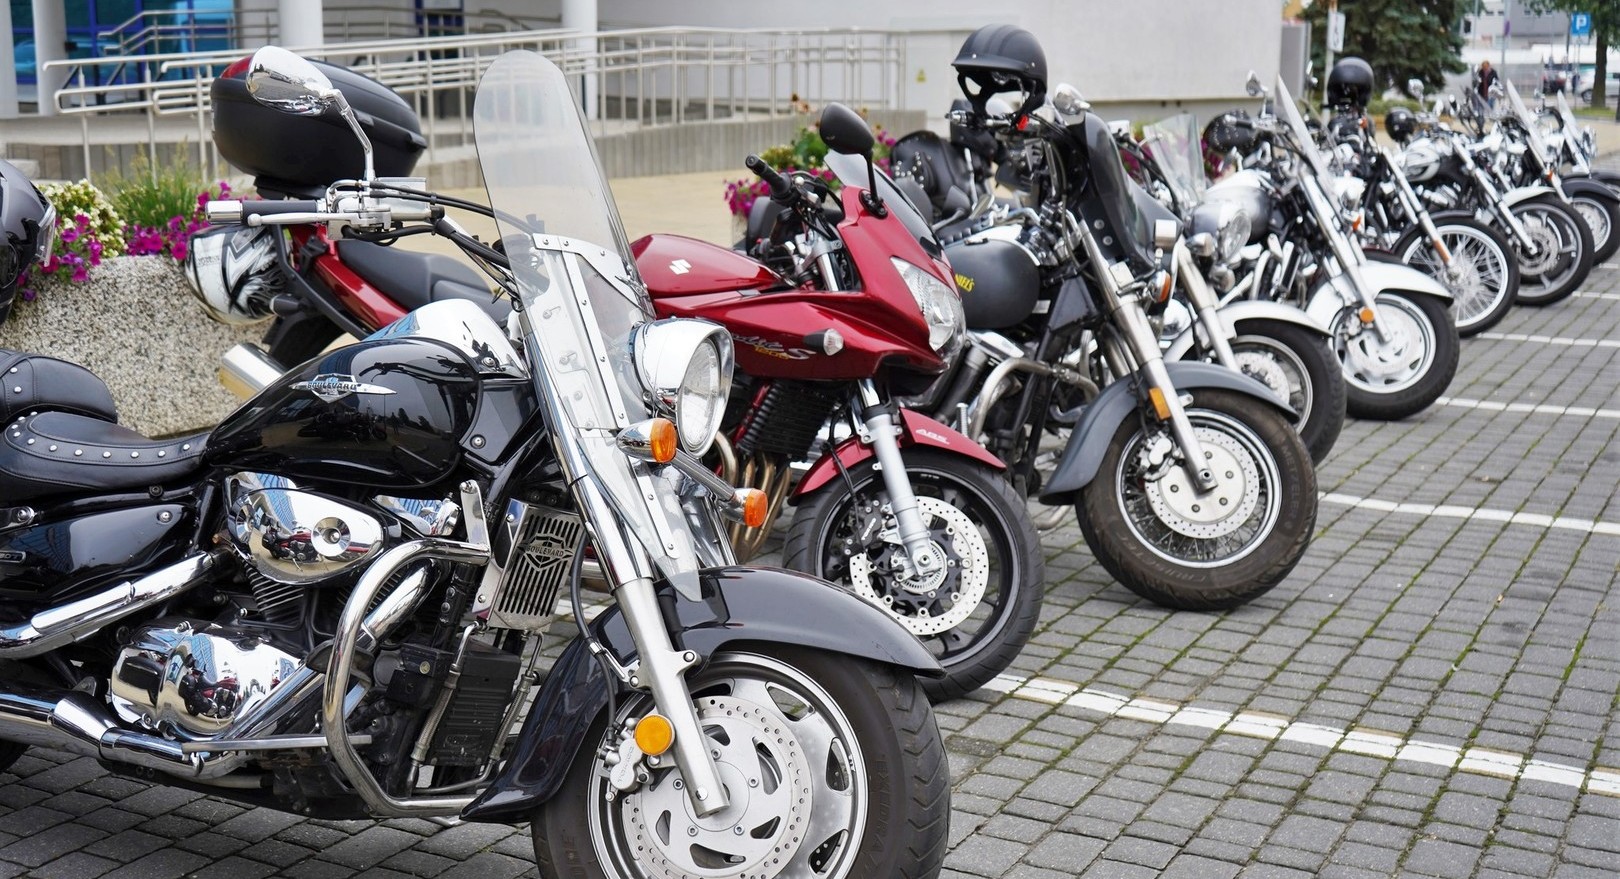 Zdjęcie kilku motocykli stojących na parkingu